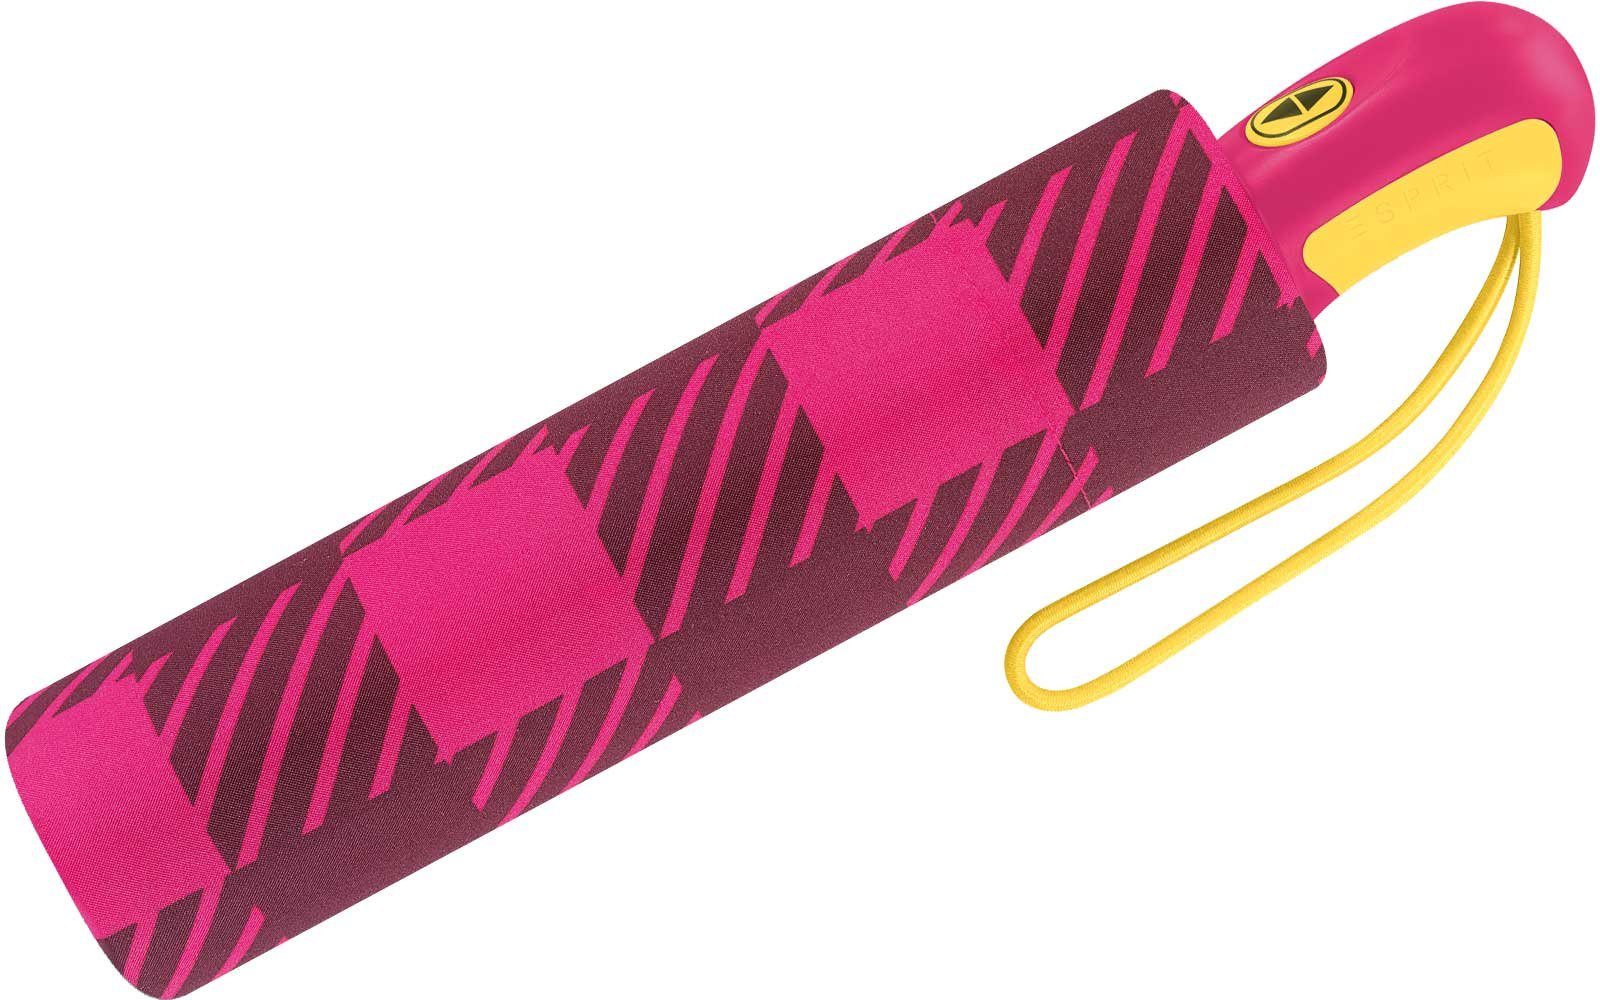 Esprit Taschenregenschirm in schöner Farben klassisches Schirm Auf-Zu pink Damen Automatik, modischen für mit Design